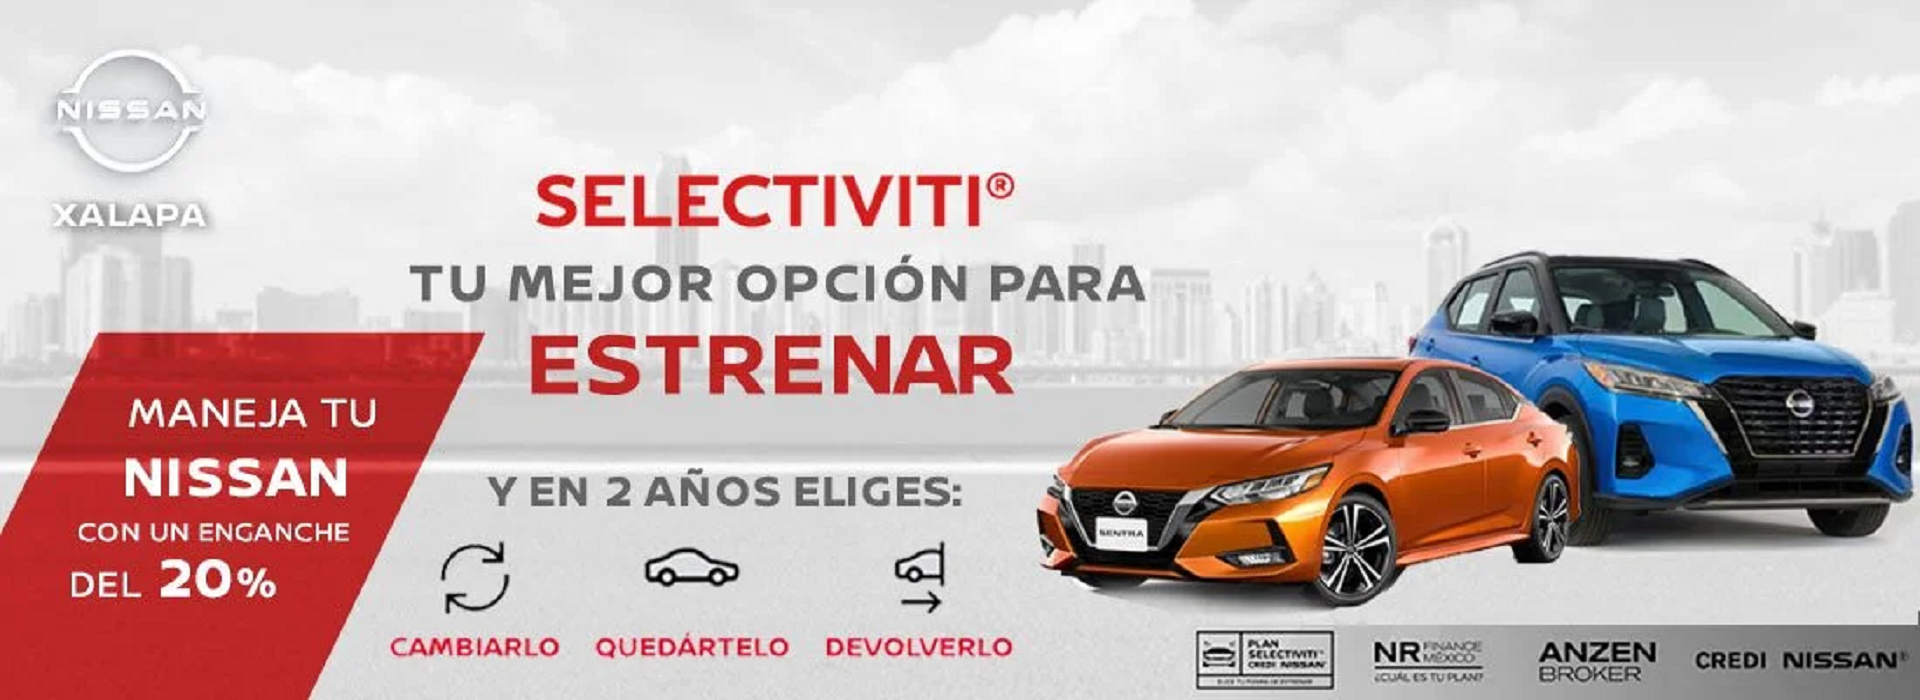 Nissan Xalapa | Agencia de autos Nissan | Xalapa, Veracruz de Ignacio de la  Llave